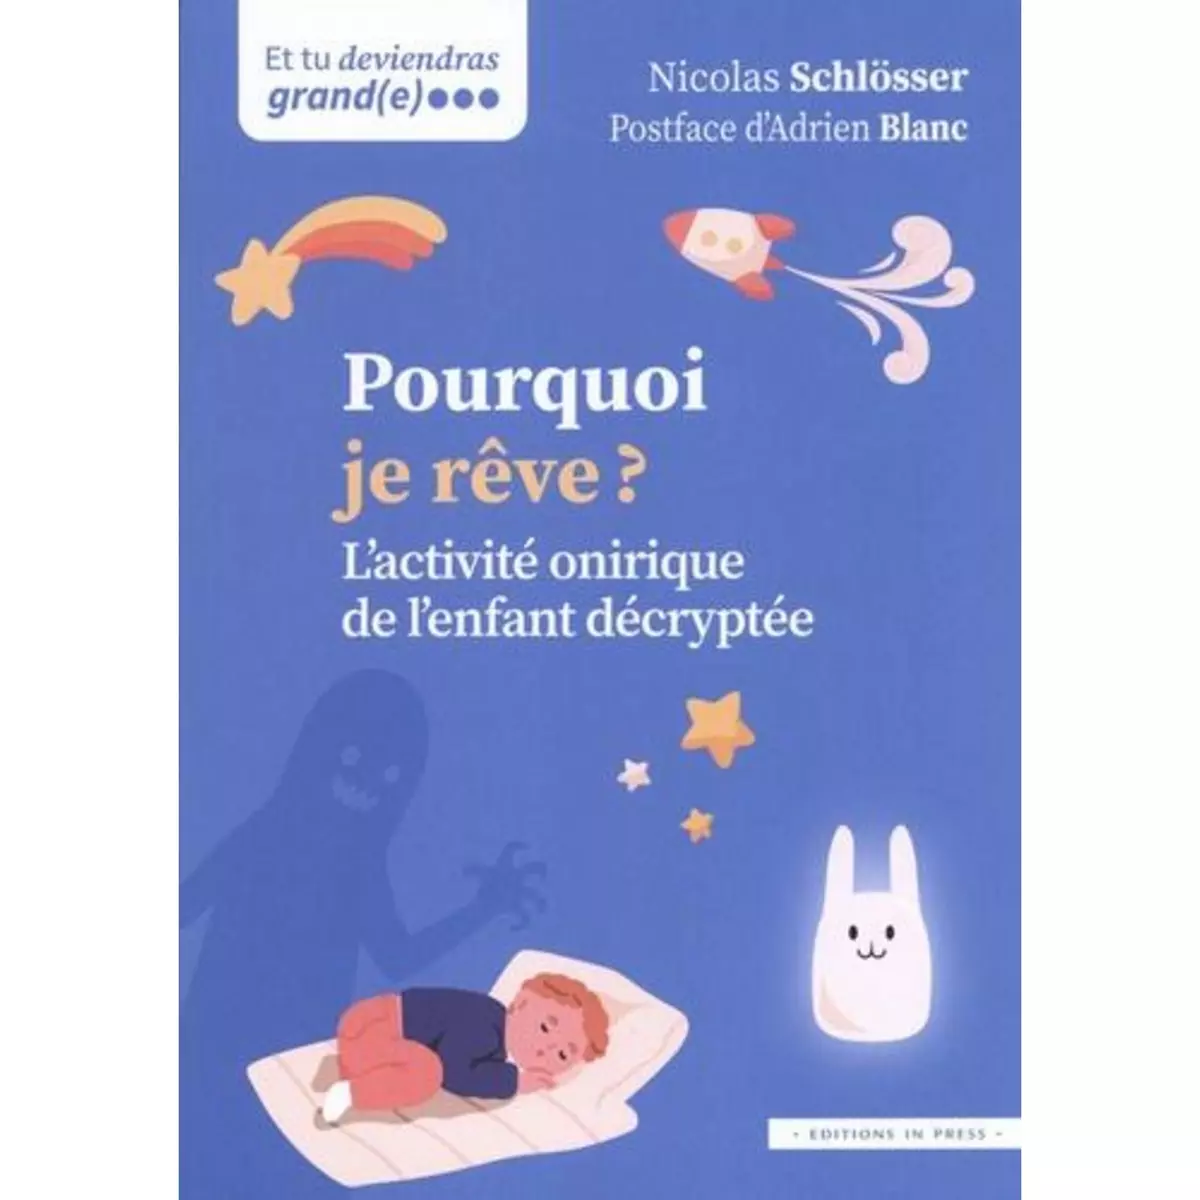  POURQUOI JE REVE ? L'ACTIVITE ONIRIQUE DE L'ENFANT DECRYPTEE, Schlösser Nicolas